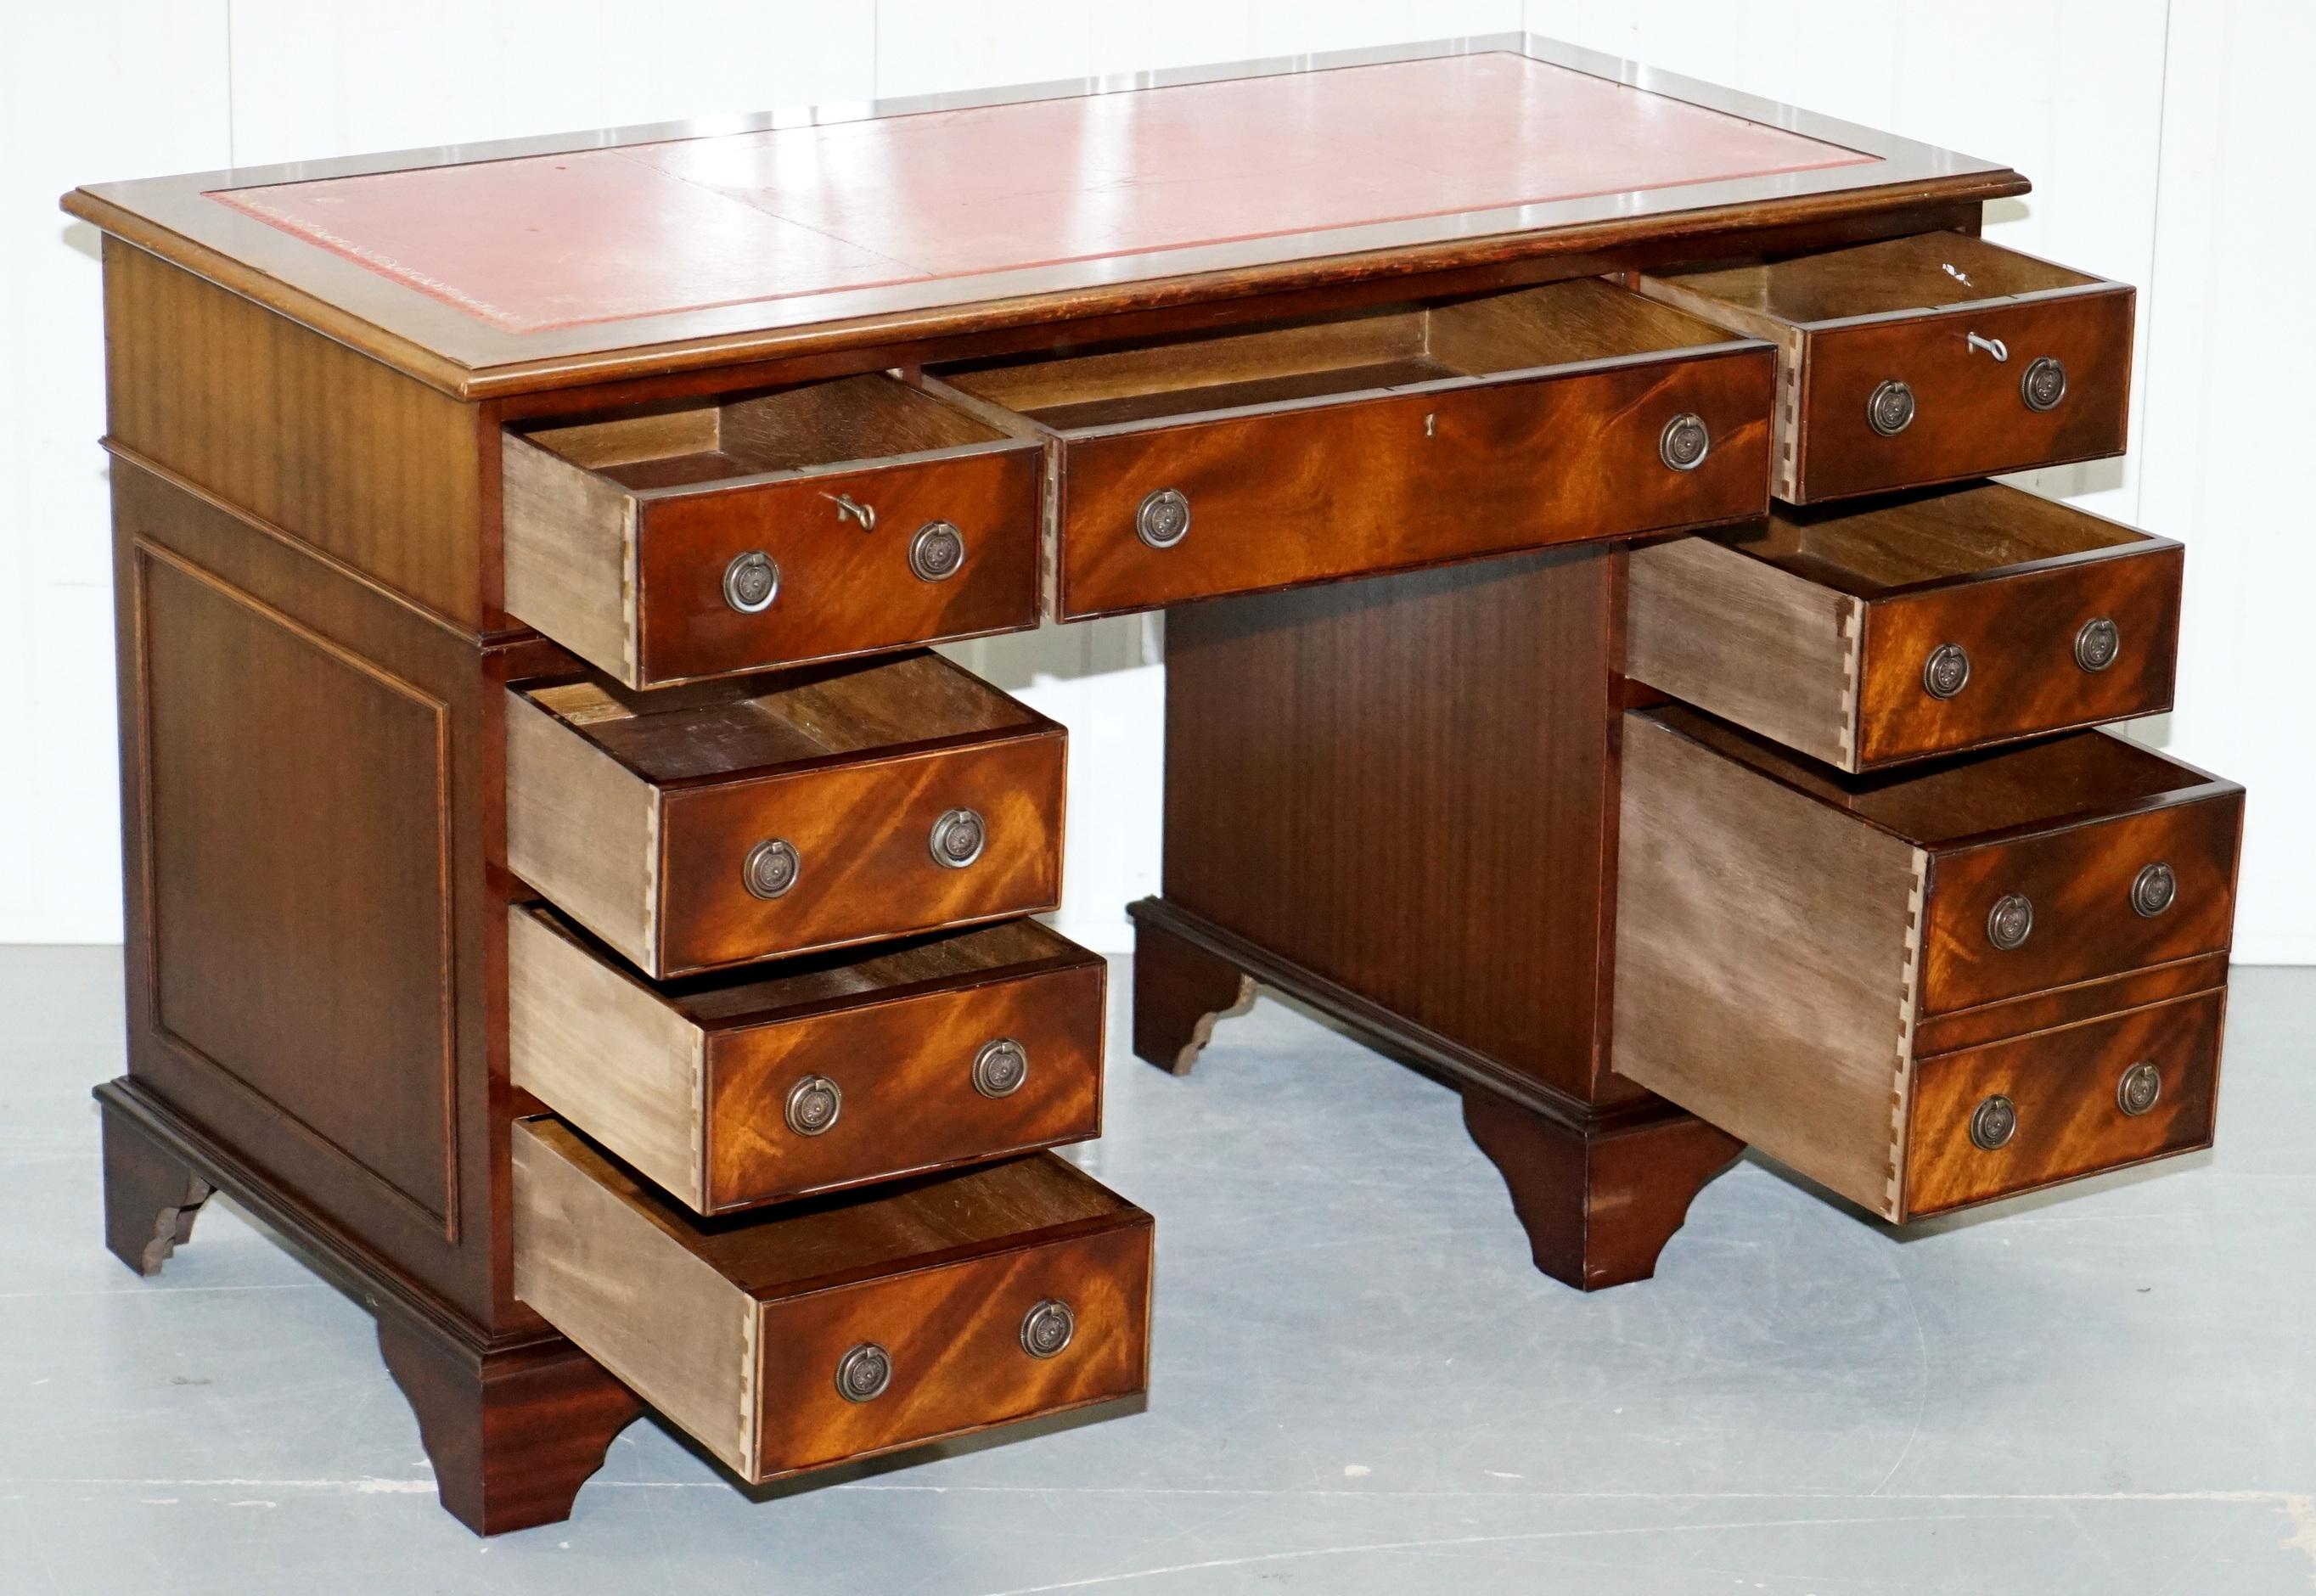 Vintage Bevan Funnell Twin Pedestal Partner Desk Oxblood Leather Writing Surface 9